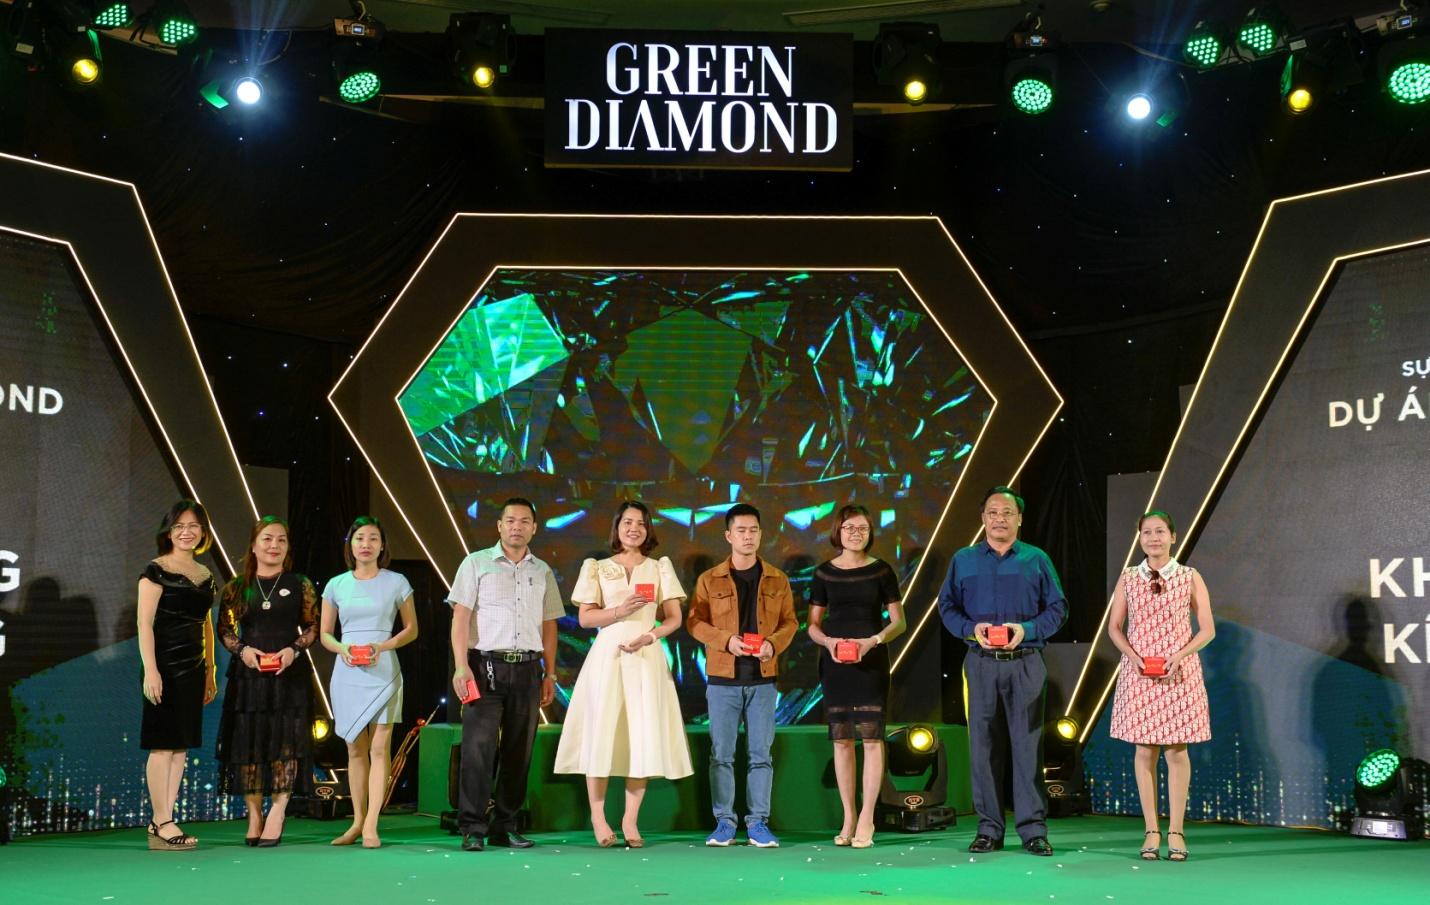  Chính thức mở bán Kiệt tác công nghệ xanh Green Diamond gây sốt thị trường miền Bắc